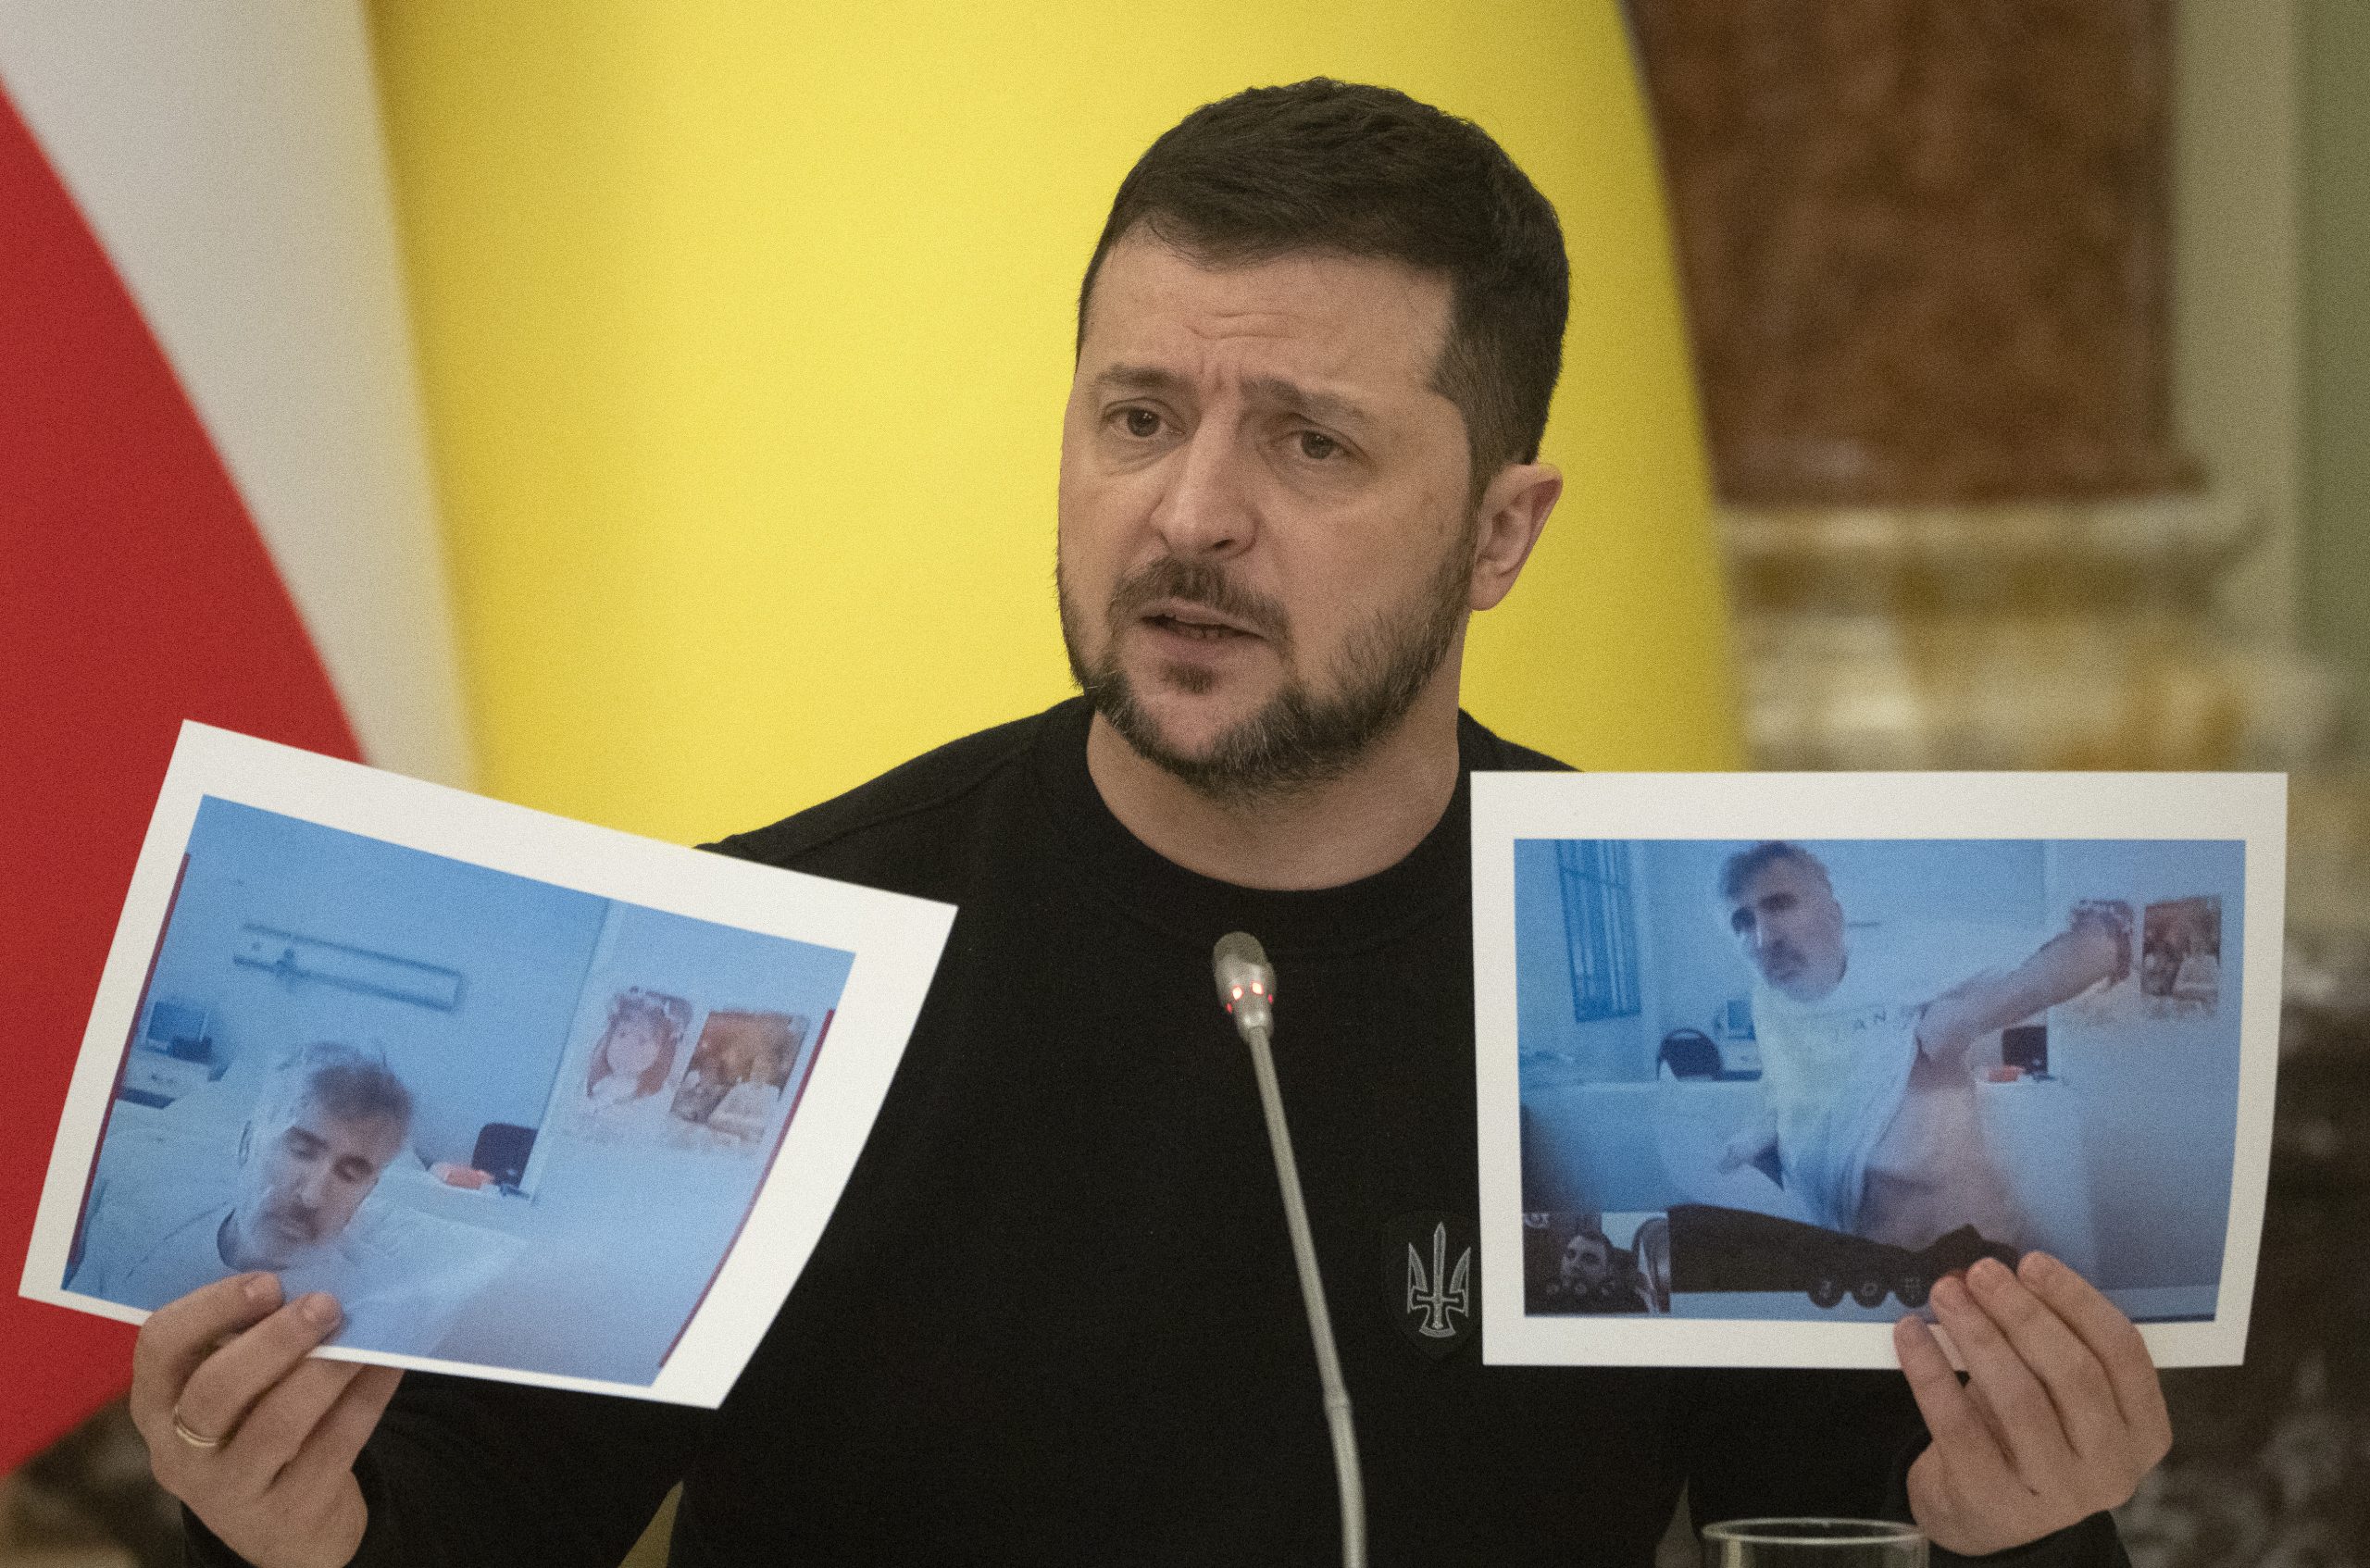 Зеленский призвал Грузию передать Саакашвили Украине